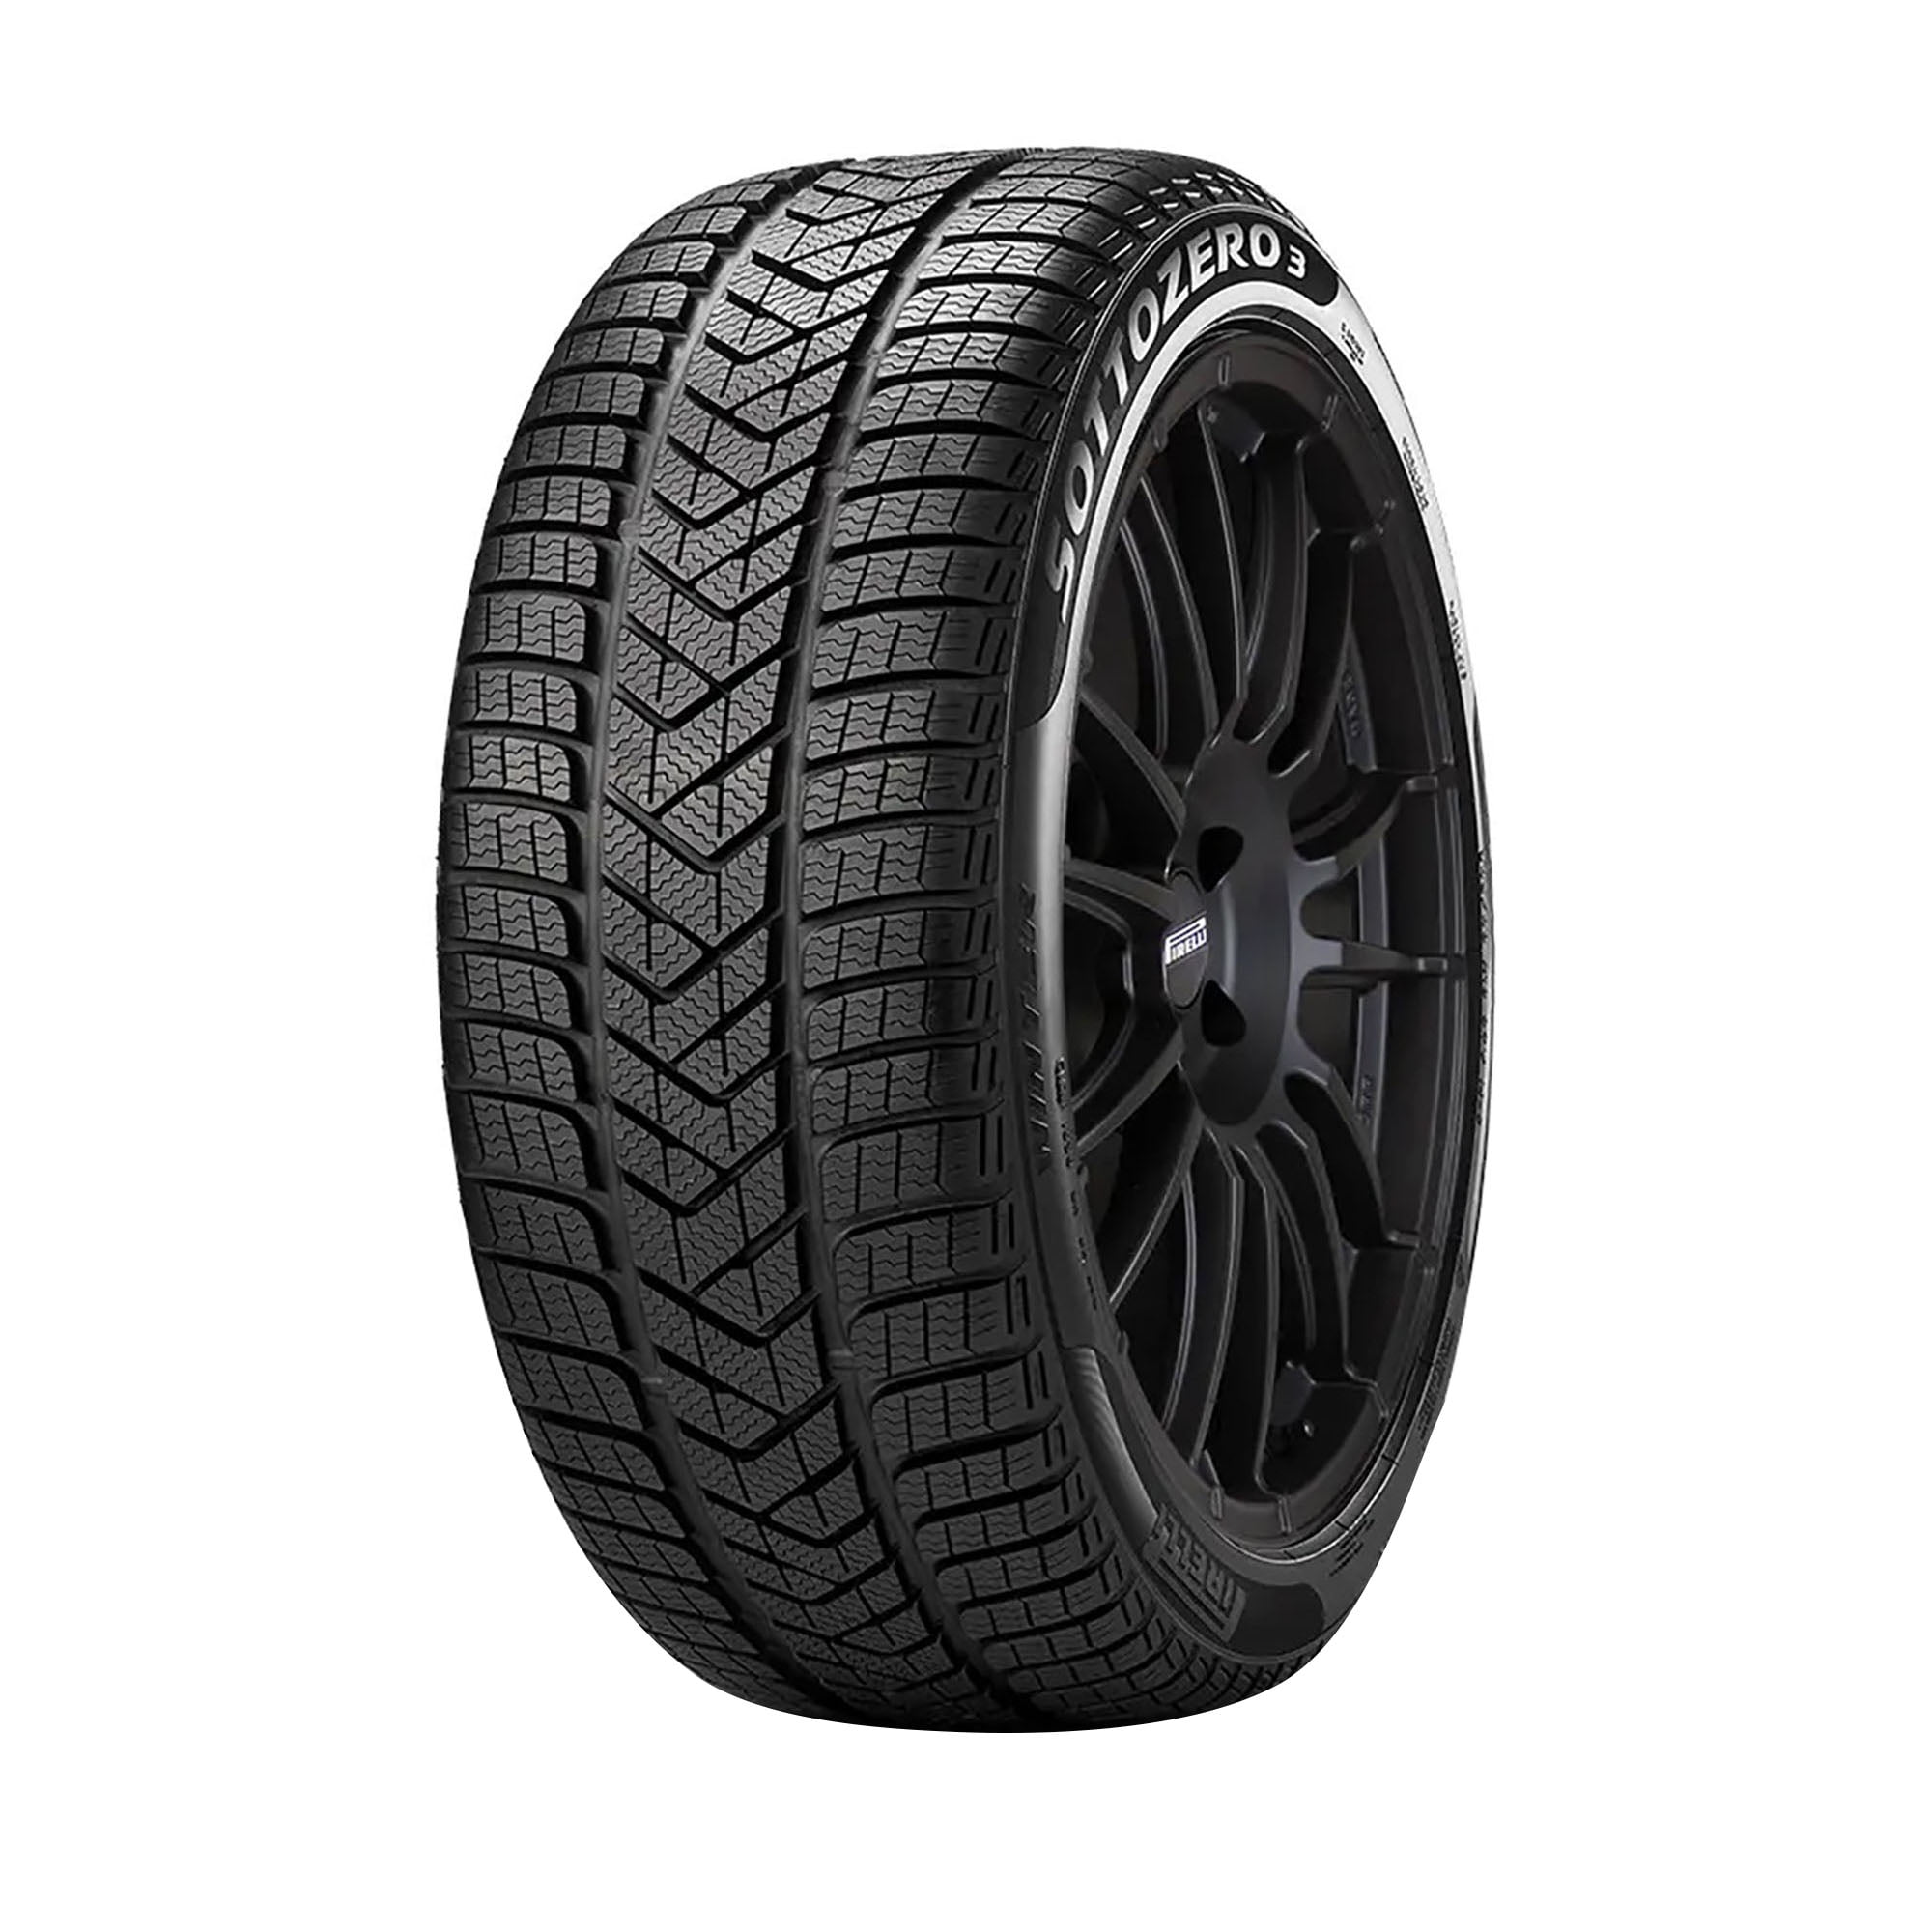 Sottozero Passenger 275/35R21 Winter 3 Tire Pirelli XL Winter 103W